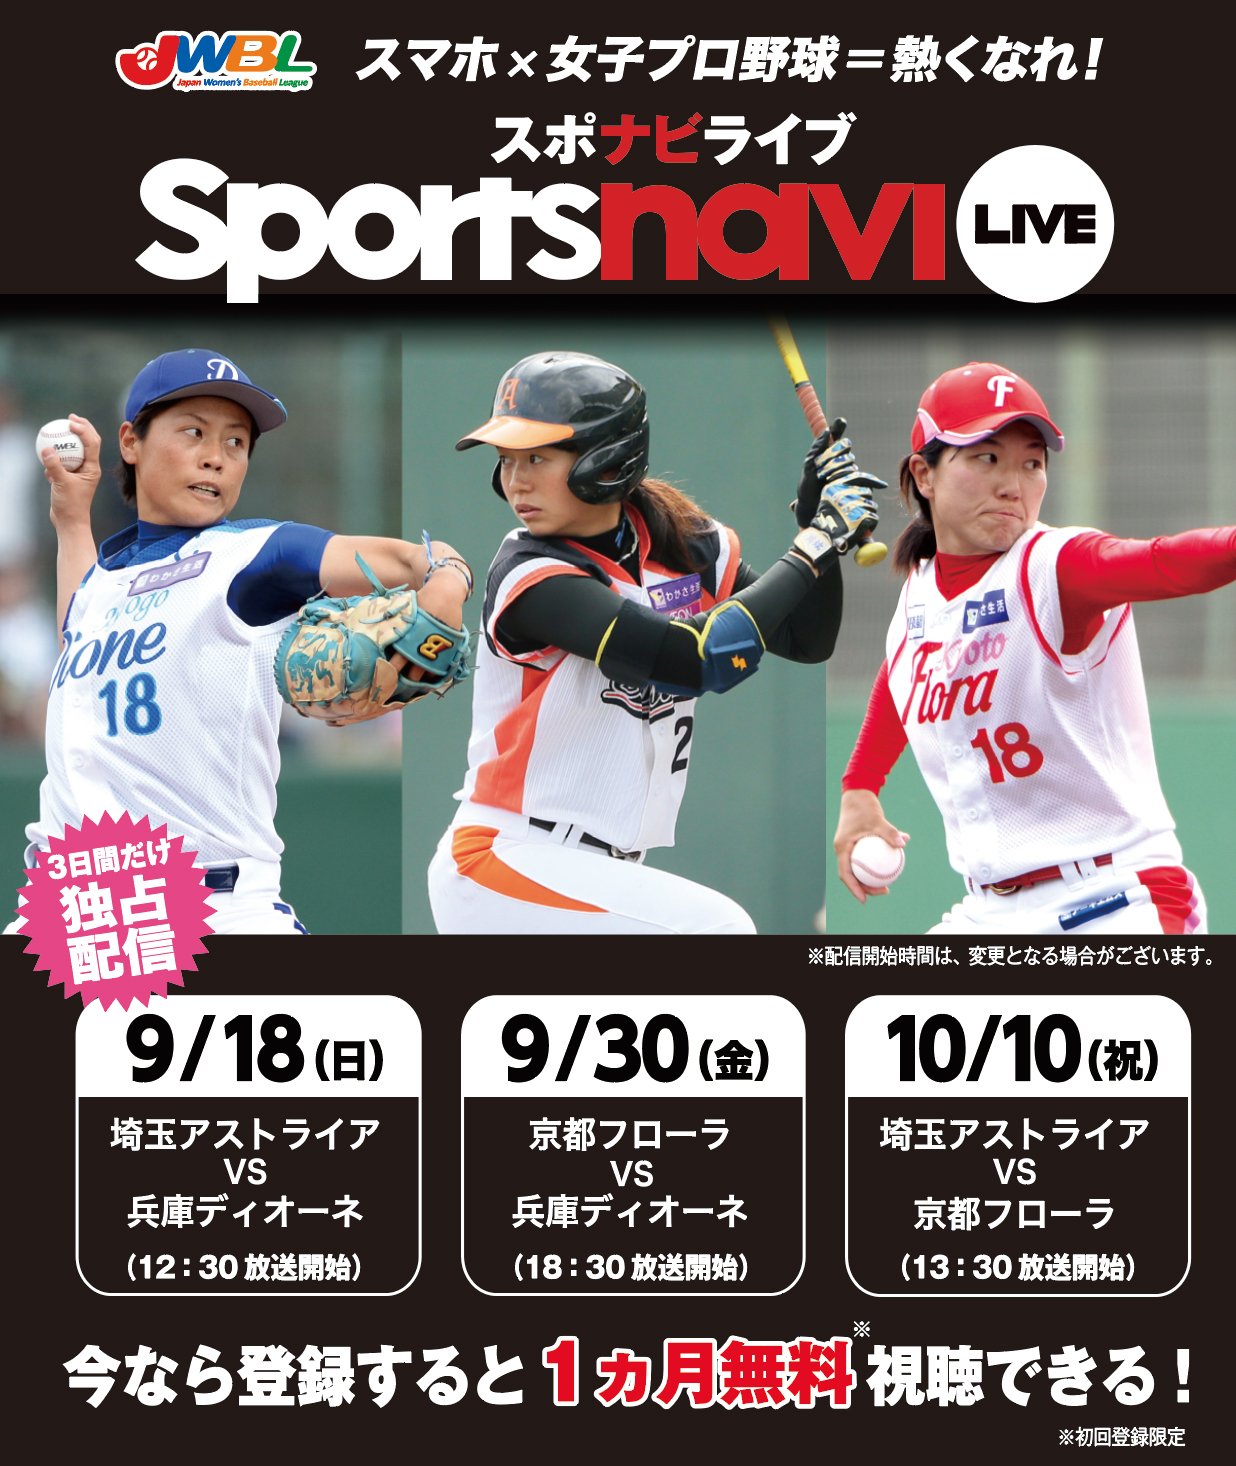 スポナビライブで女子プロ野球独占配信決定 日本女子プロ野球リーグのプレスリリース